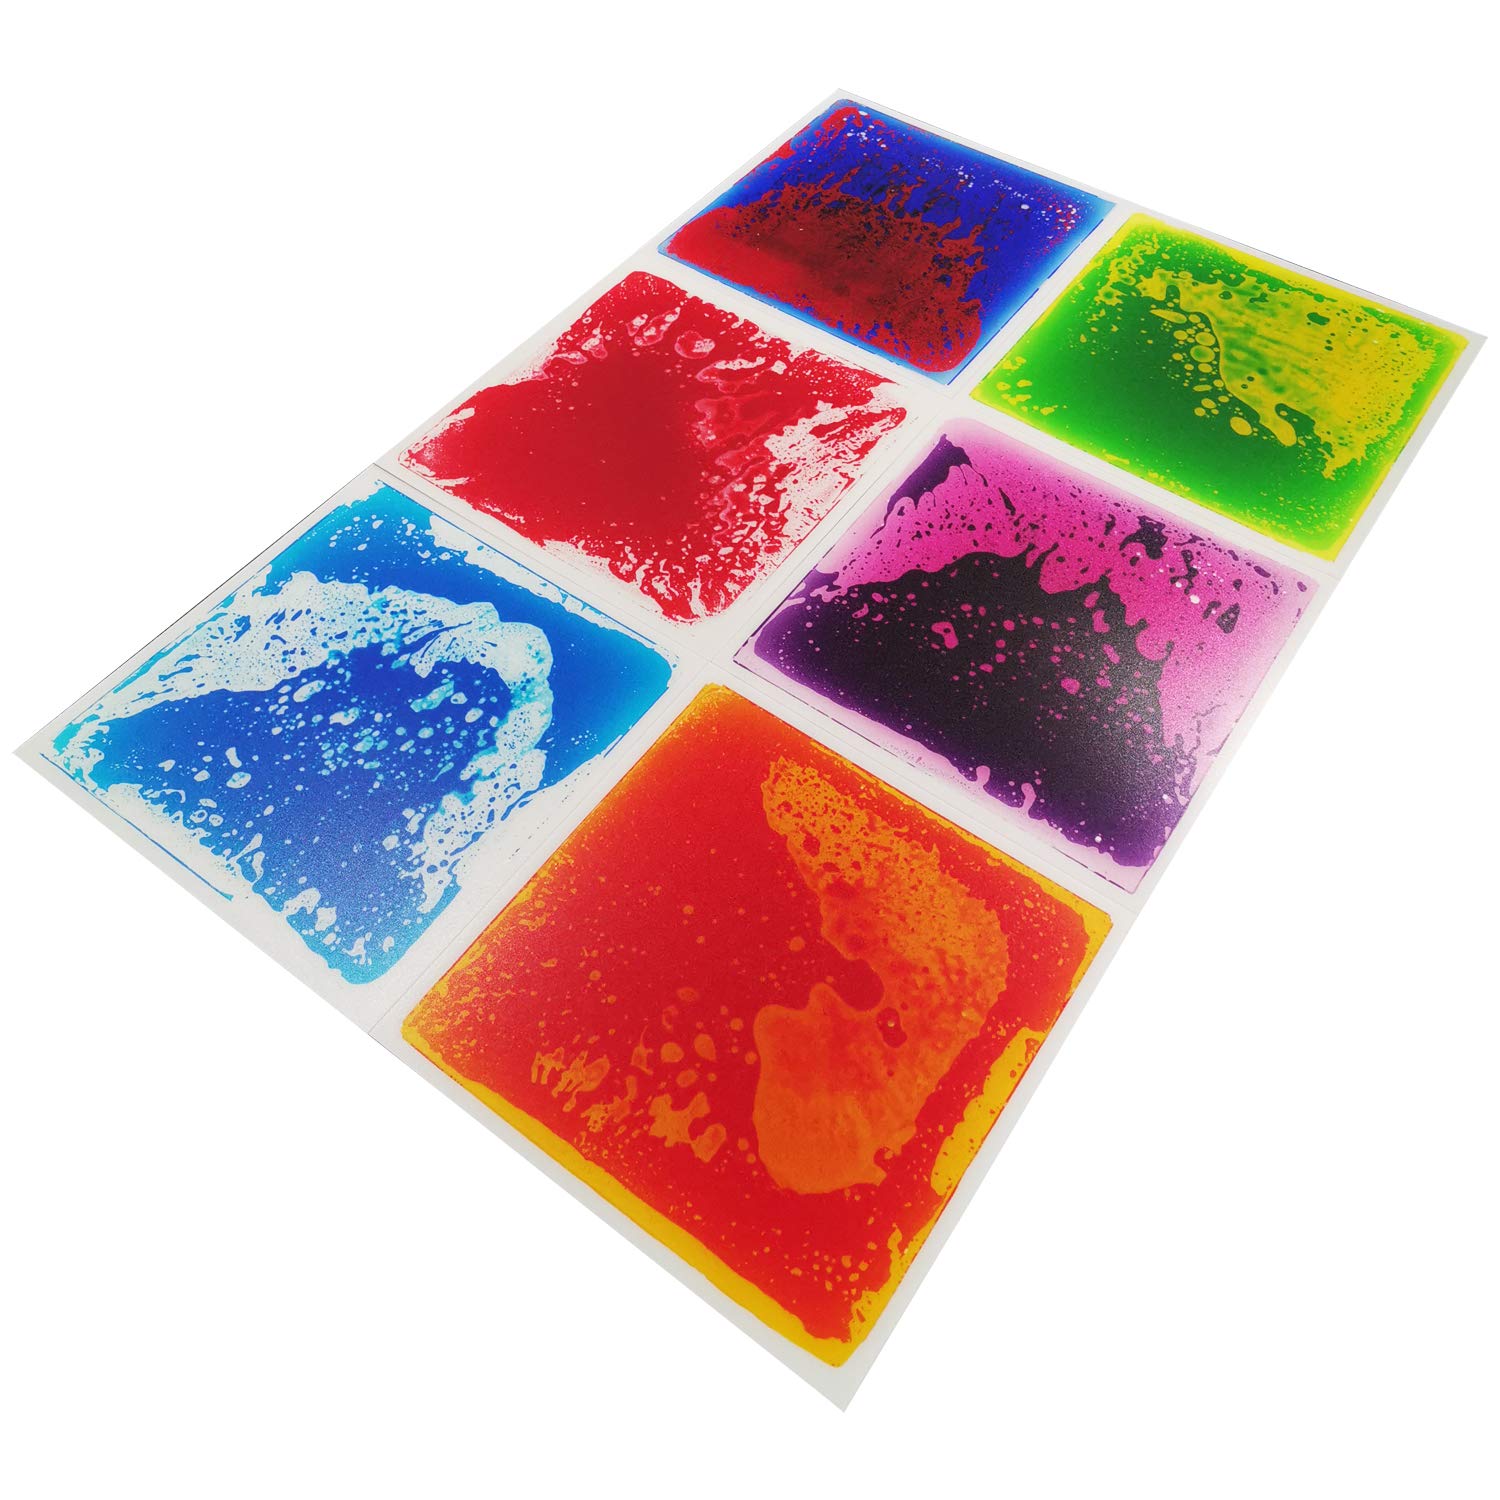 A11000 - Multi-Color Exercise Mat Liquid Encased Fancy Playmat Kids Play Floor Tile, Set of 6